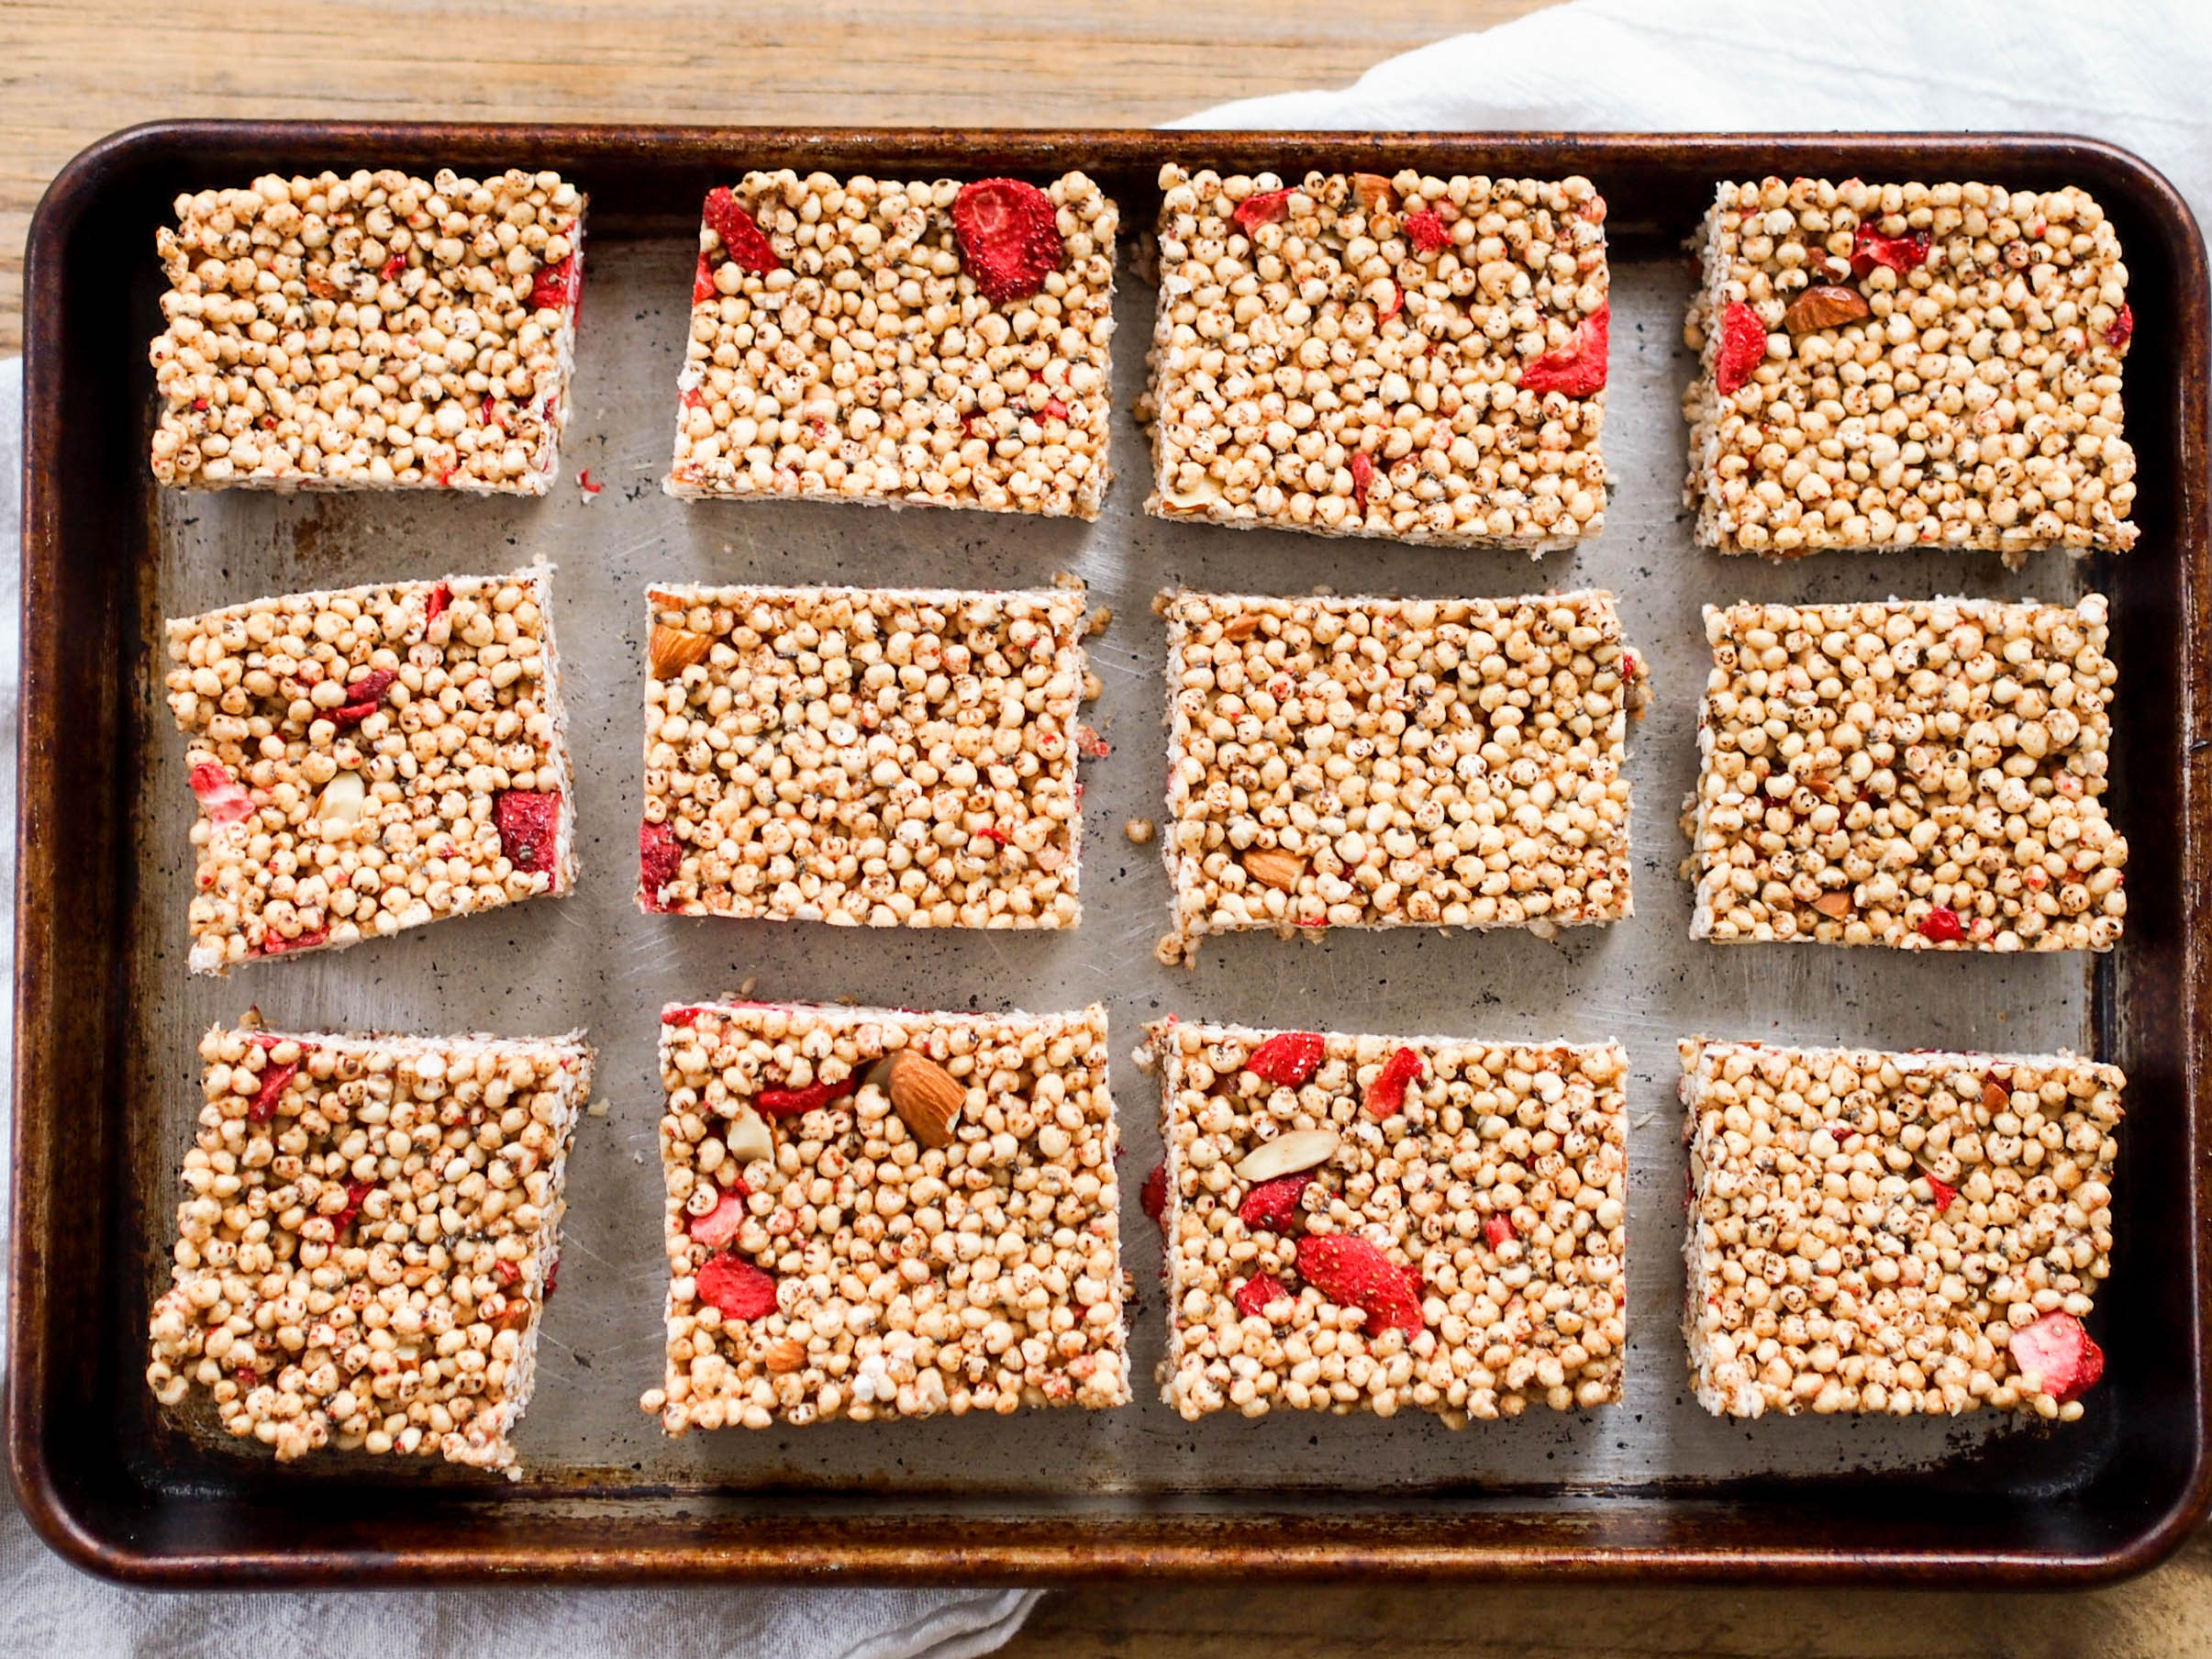 用杏仁和冷冻干燥的草莓来享用这些棉花糖免费酥脆点心吧!